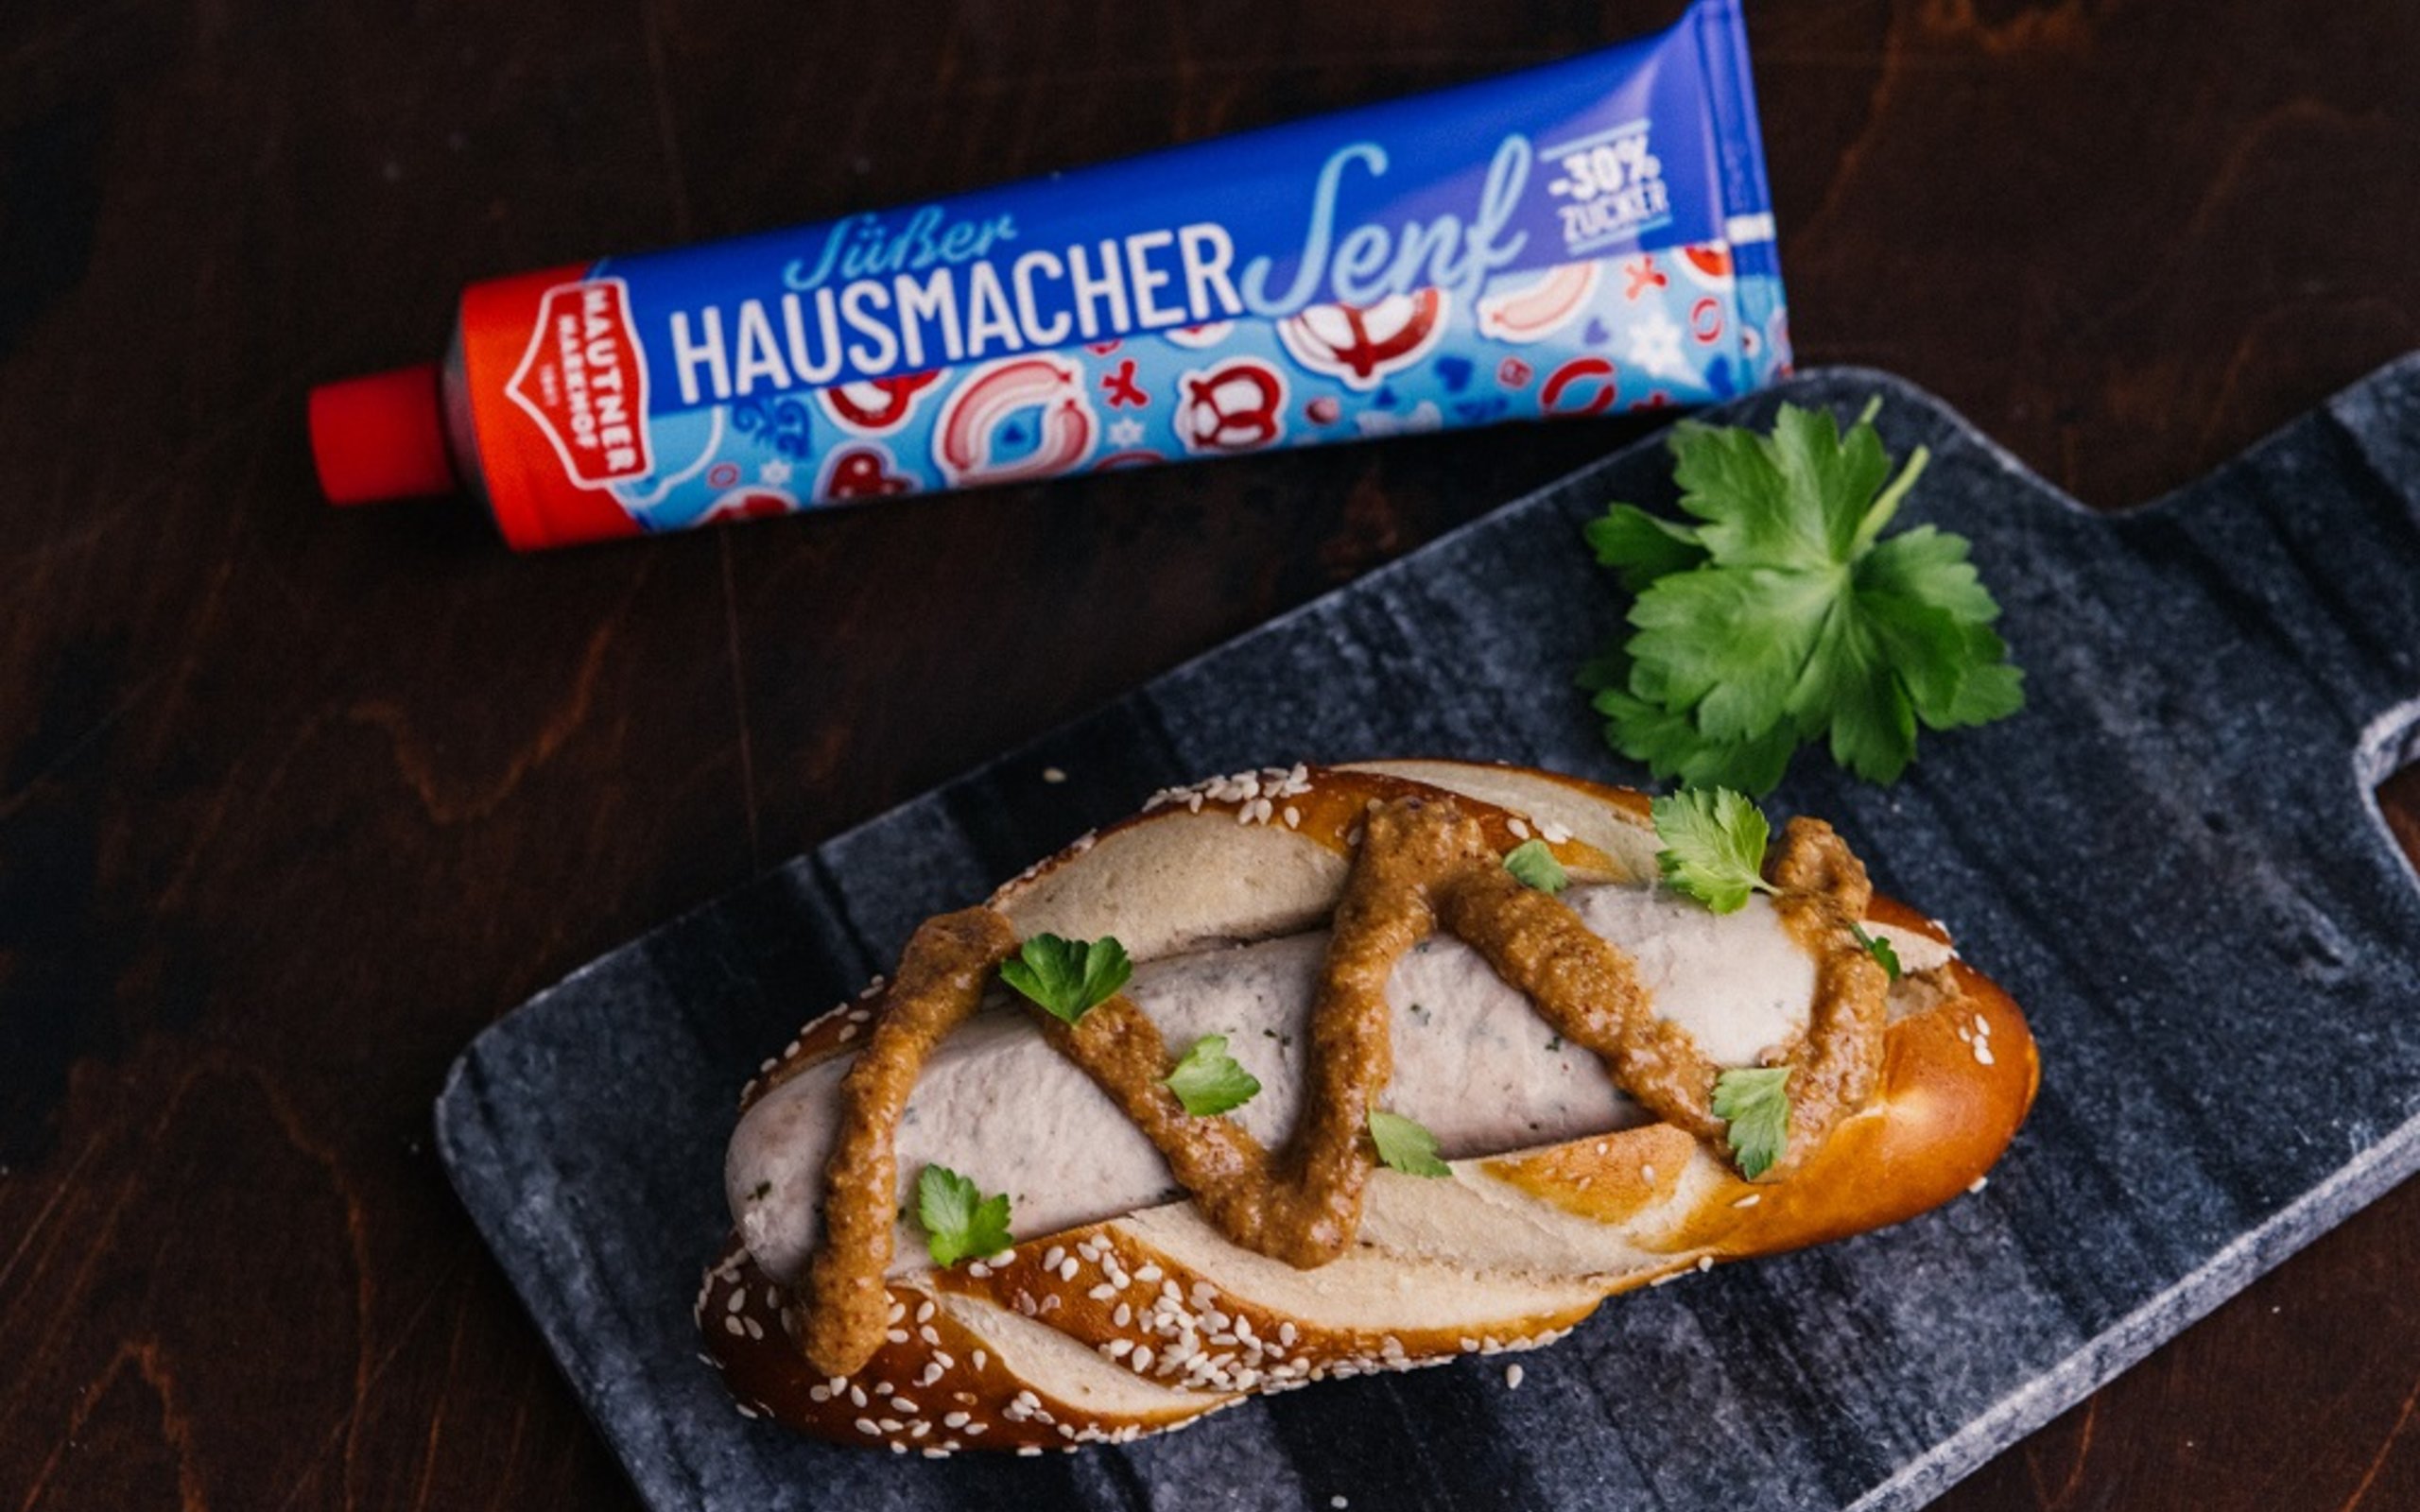 Rezeptfoto Weisswurst Hot Dog mit Hausmachersenf